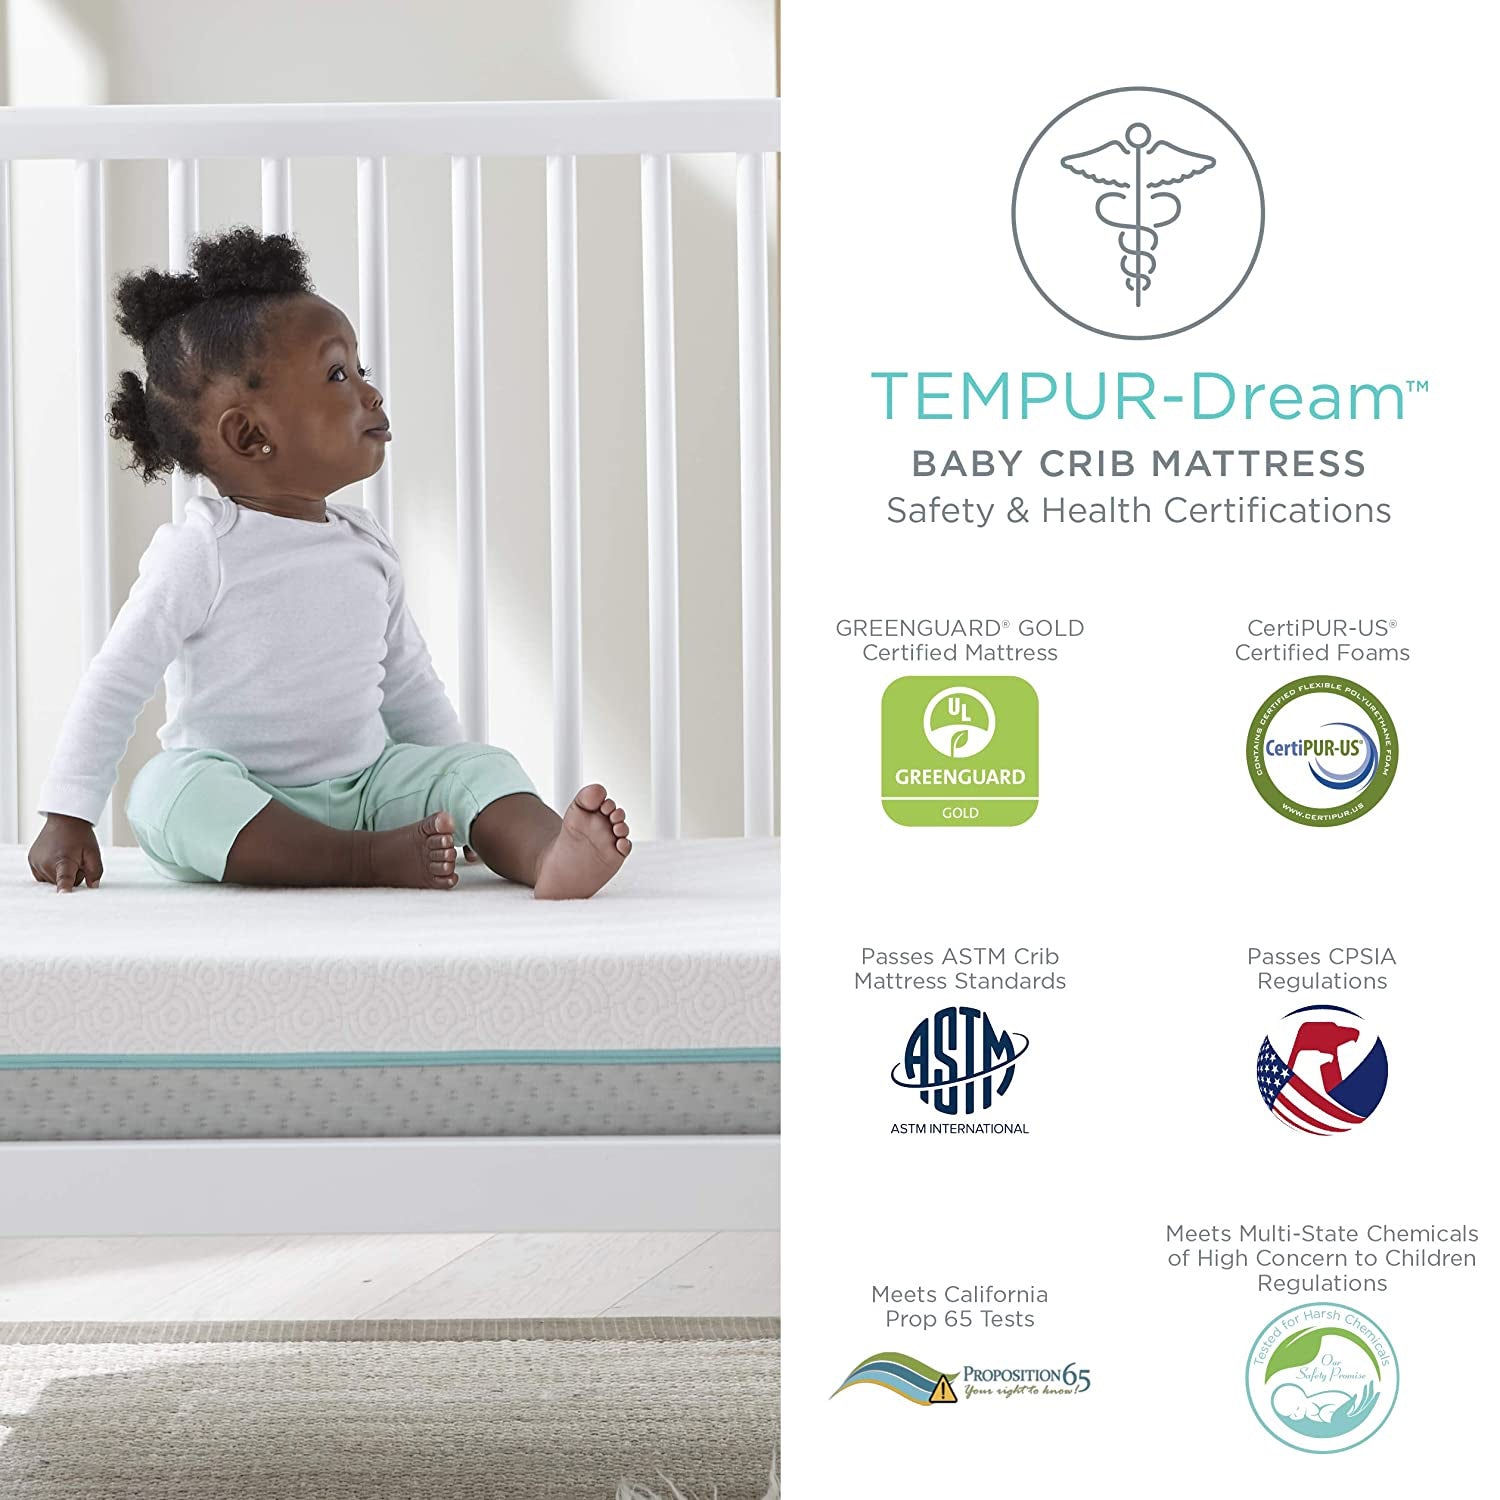 Tempur-Pedic TEMPUR-Dream 2-Stage Crib Mattress